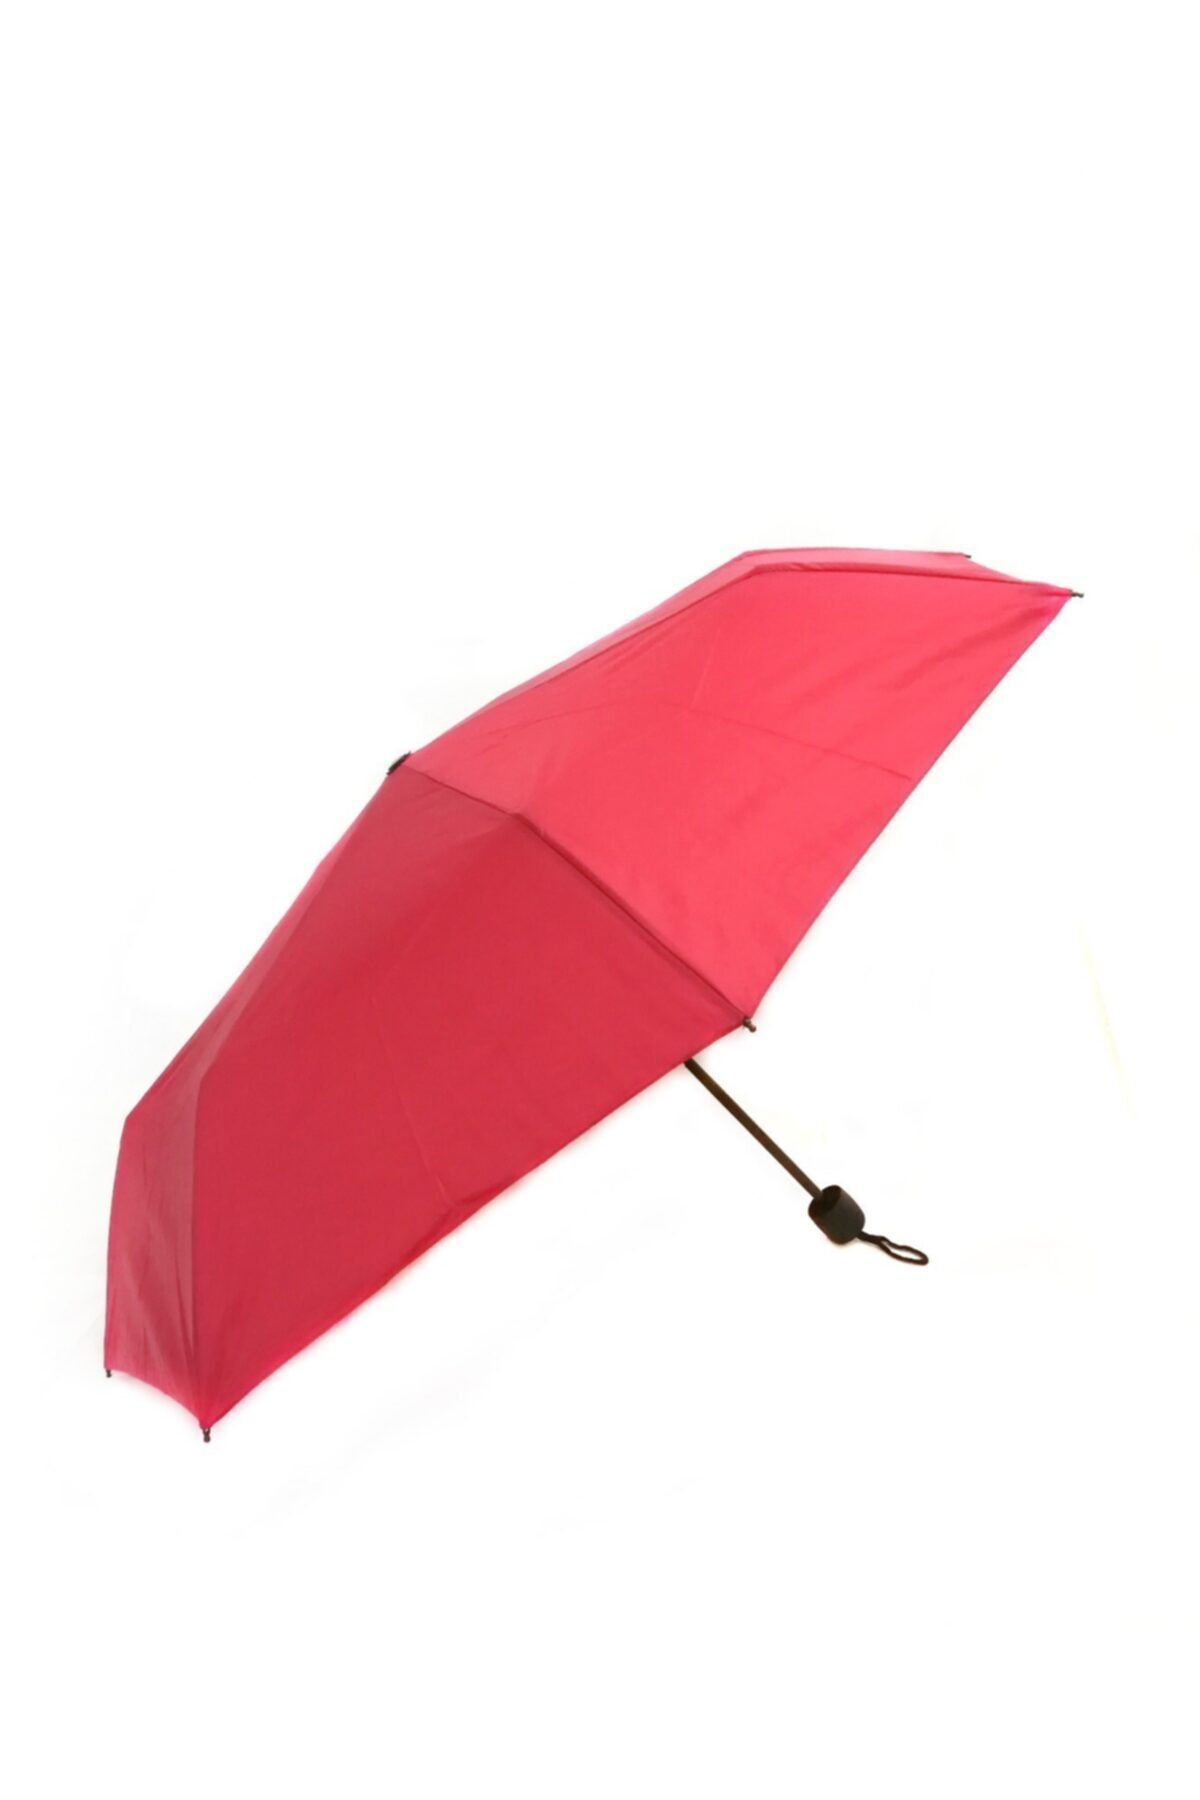 İstocToptan Unisex Şemsiye Çanta Boy Kullanılabilen Renkli Şemsiye, Mini Boy Şemsiye